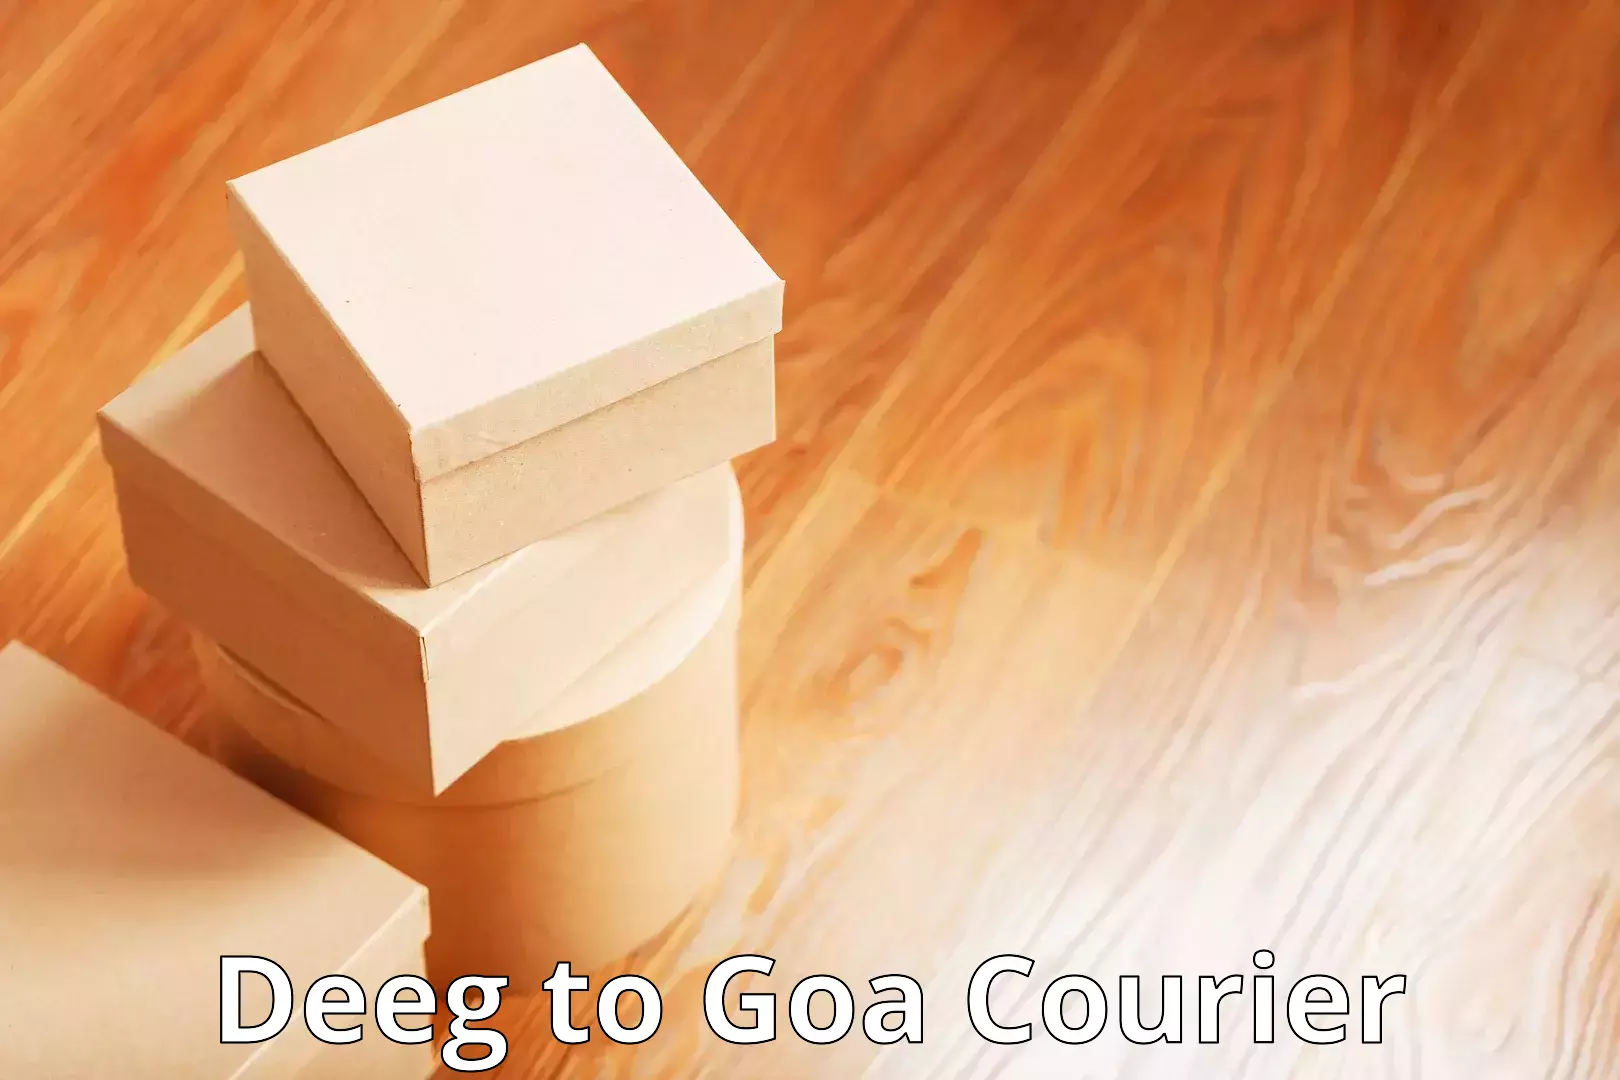 Flexible delivery schedules in Deeg to Vasco da Gama